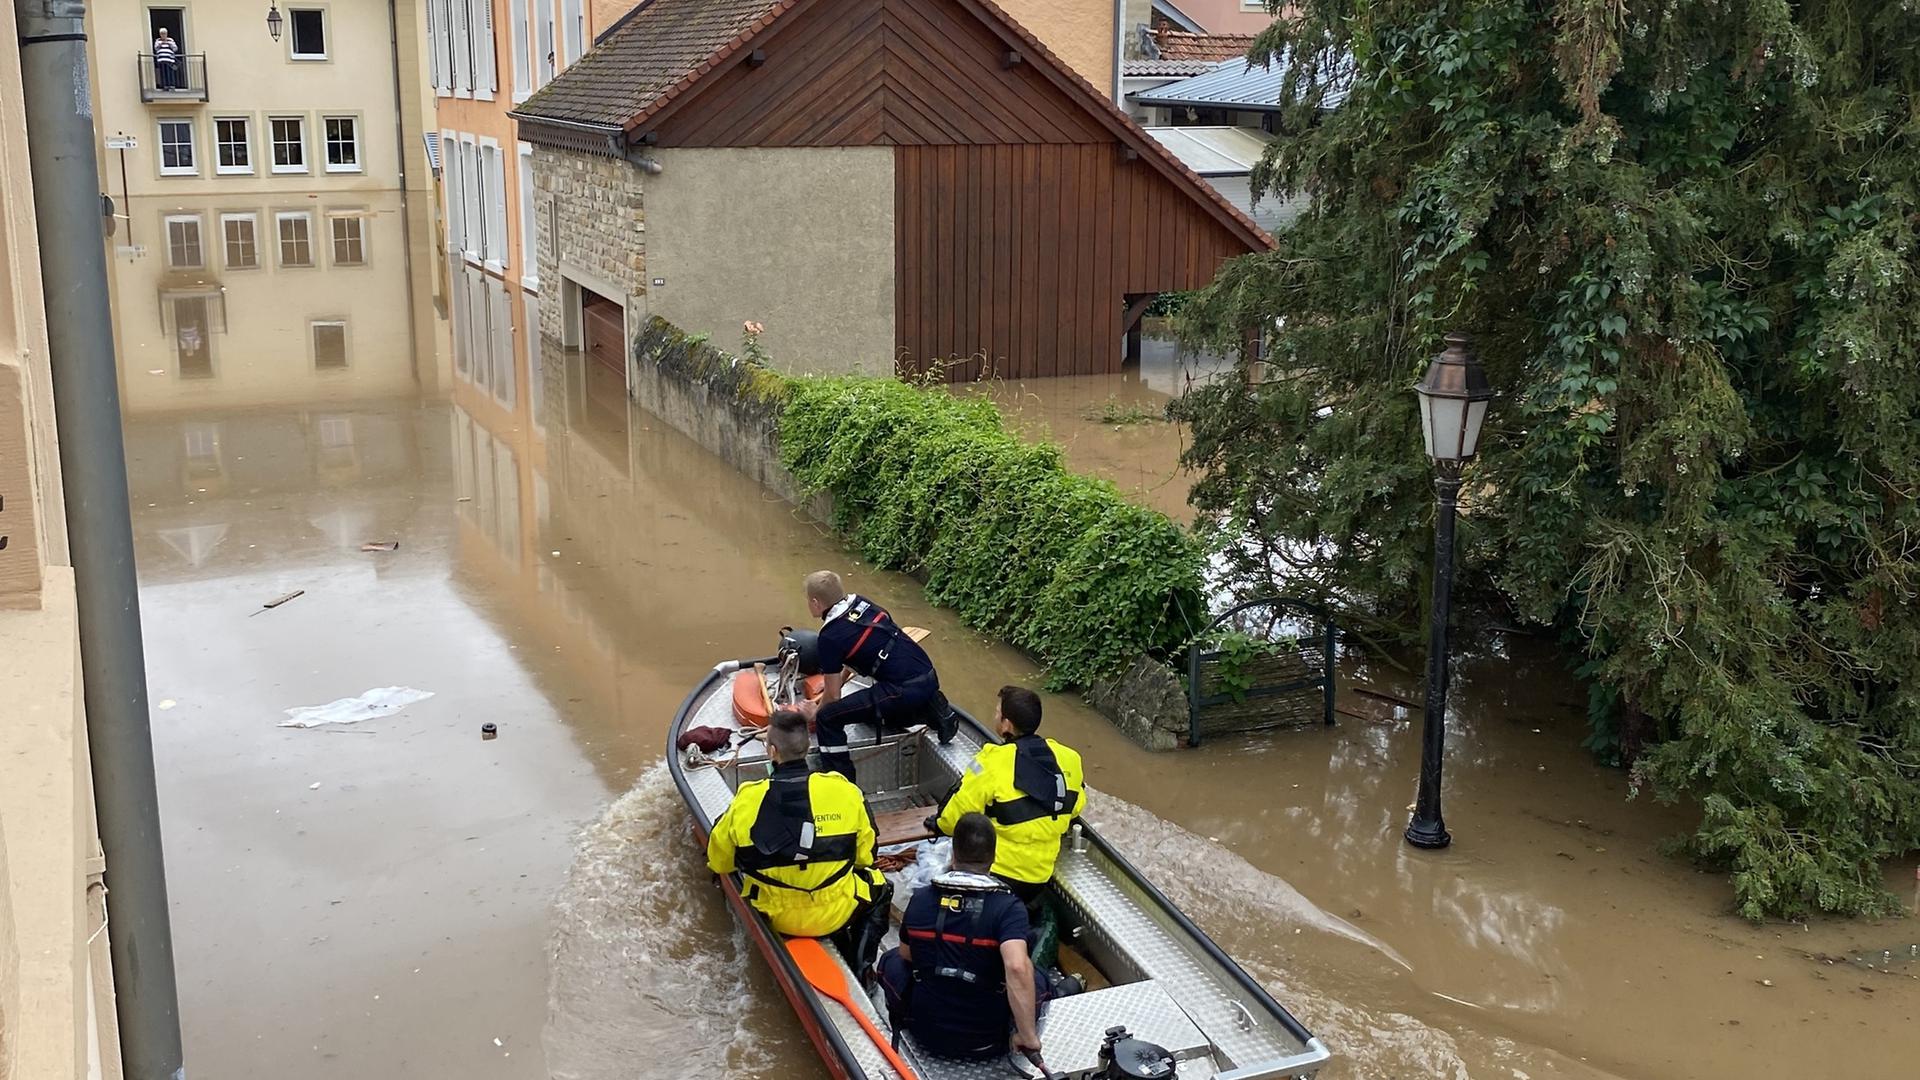 Hochwasser in Echternach, evakuierung / Foto: Kristina Wittal